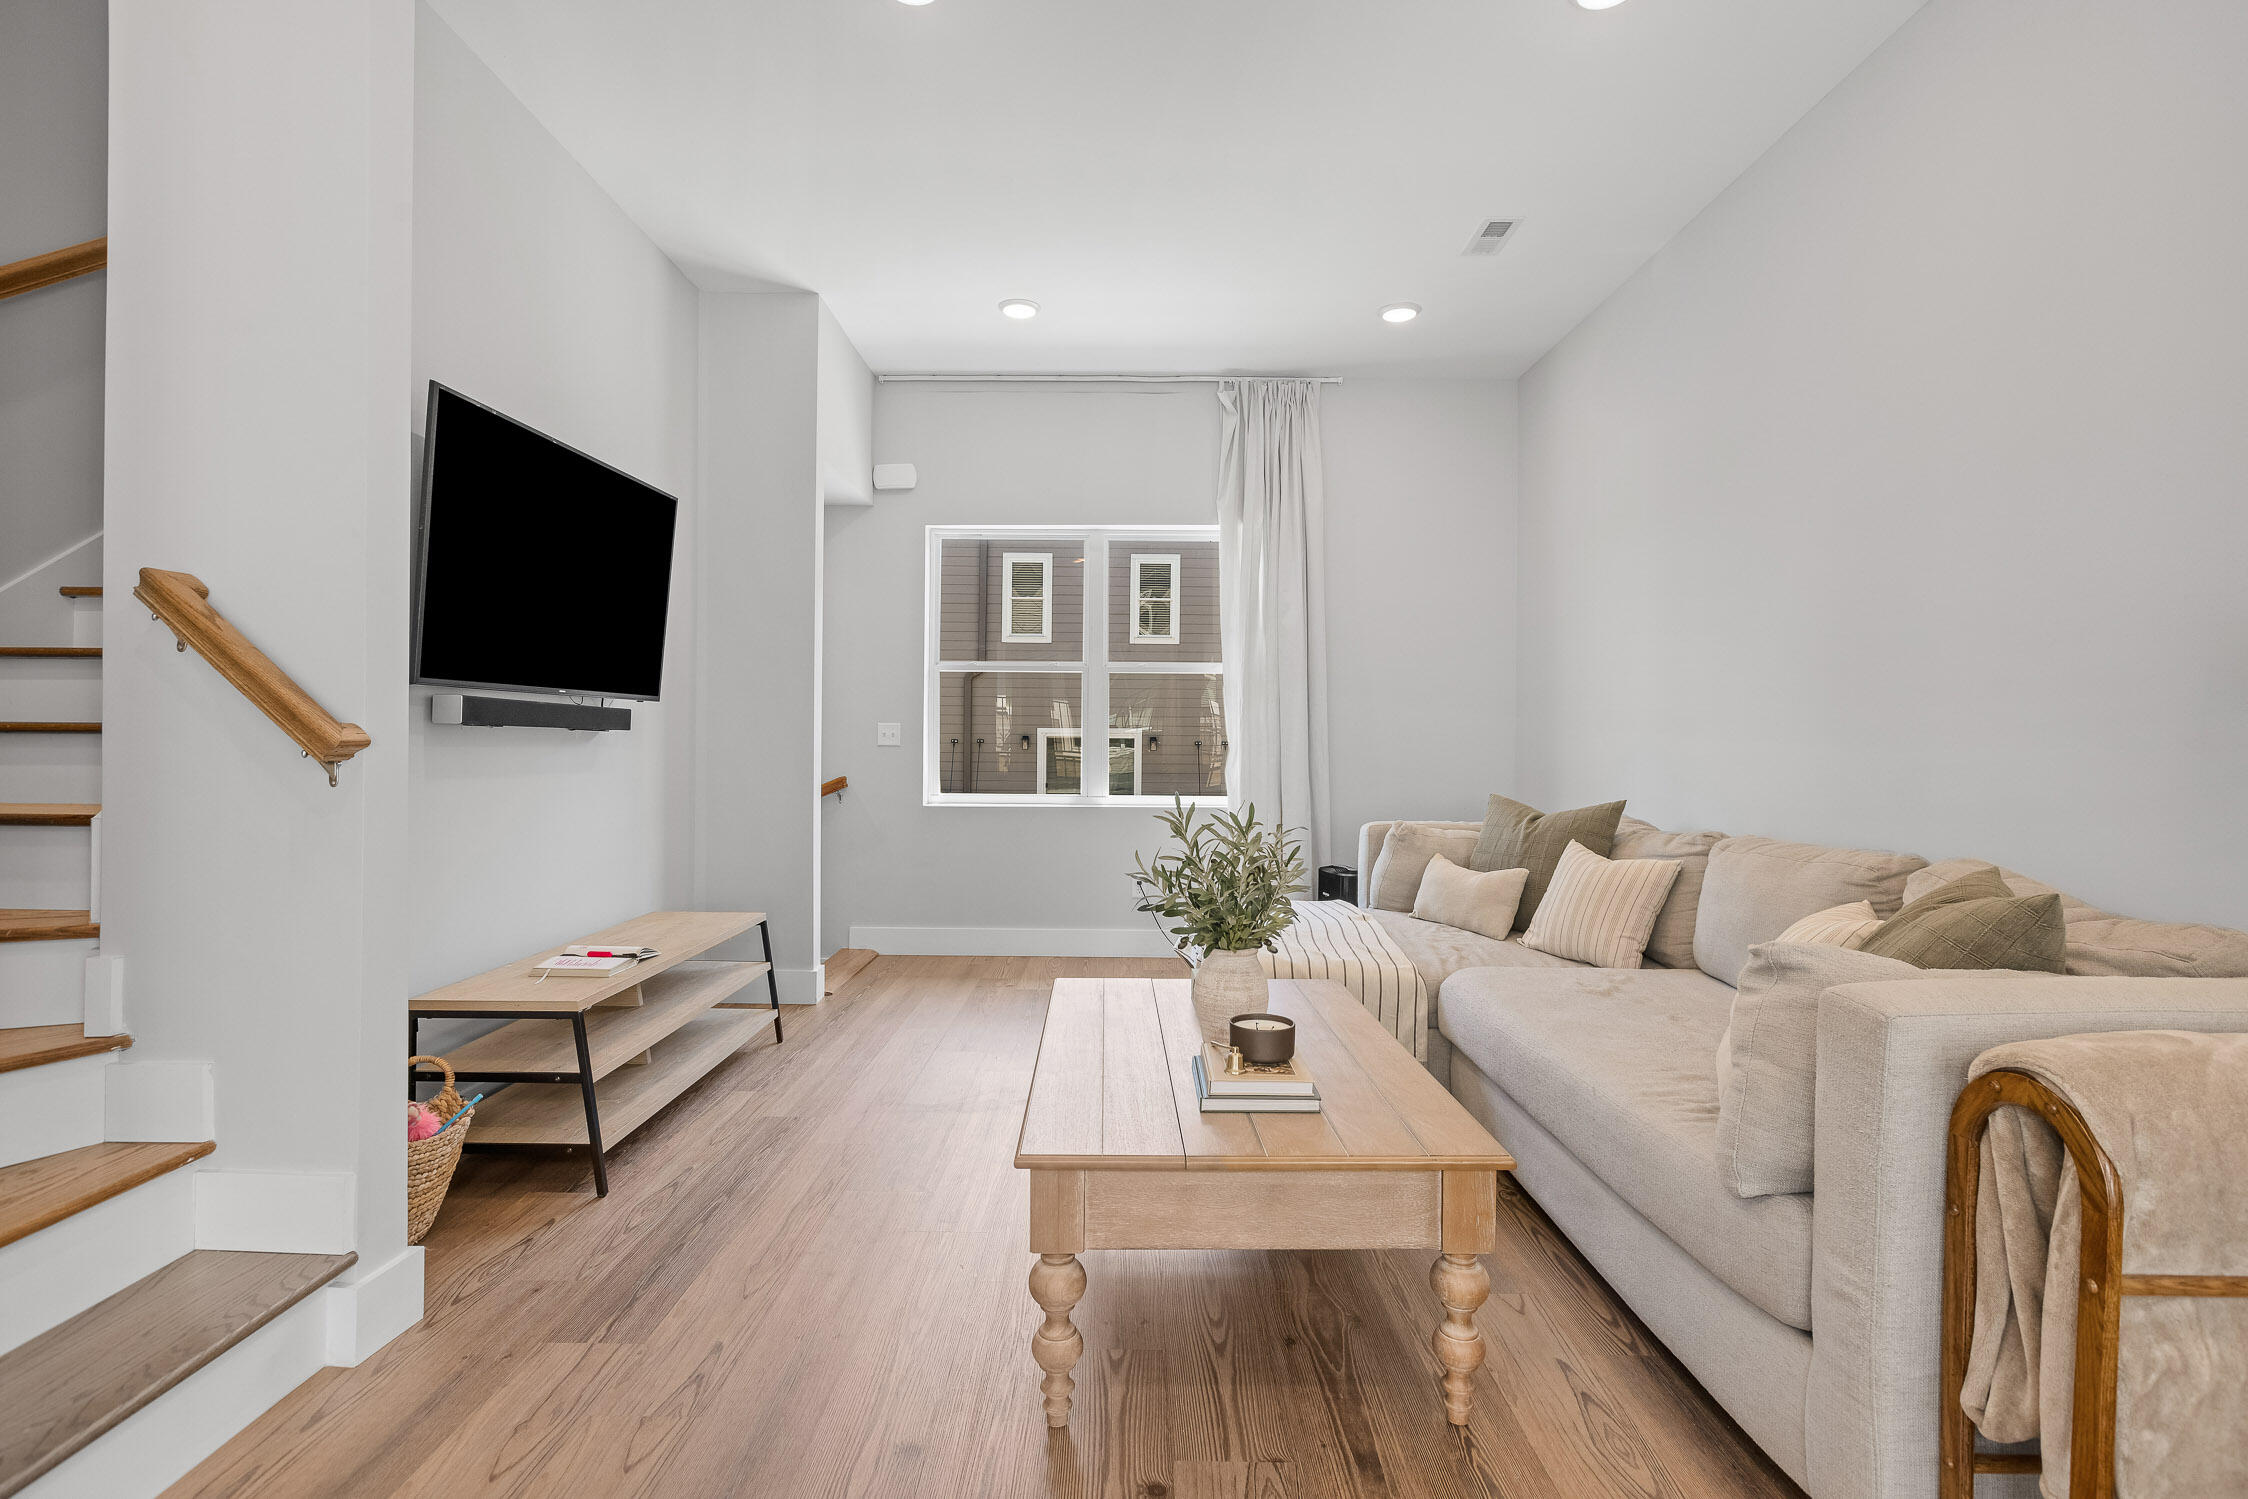 Second Floor - Living Room & Flex Space